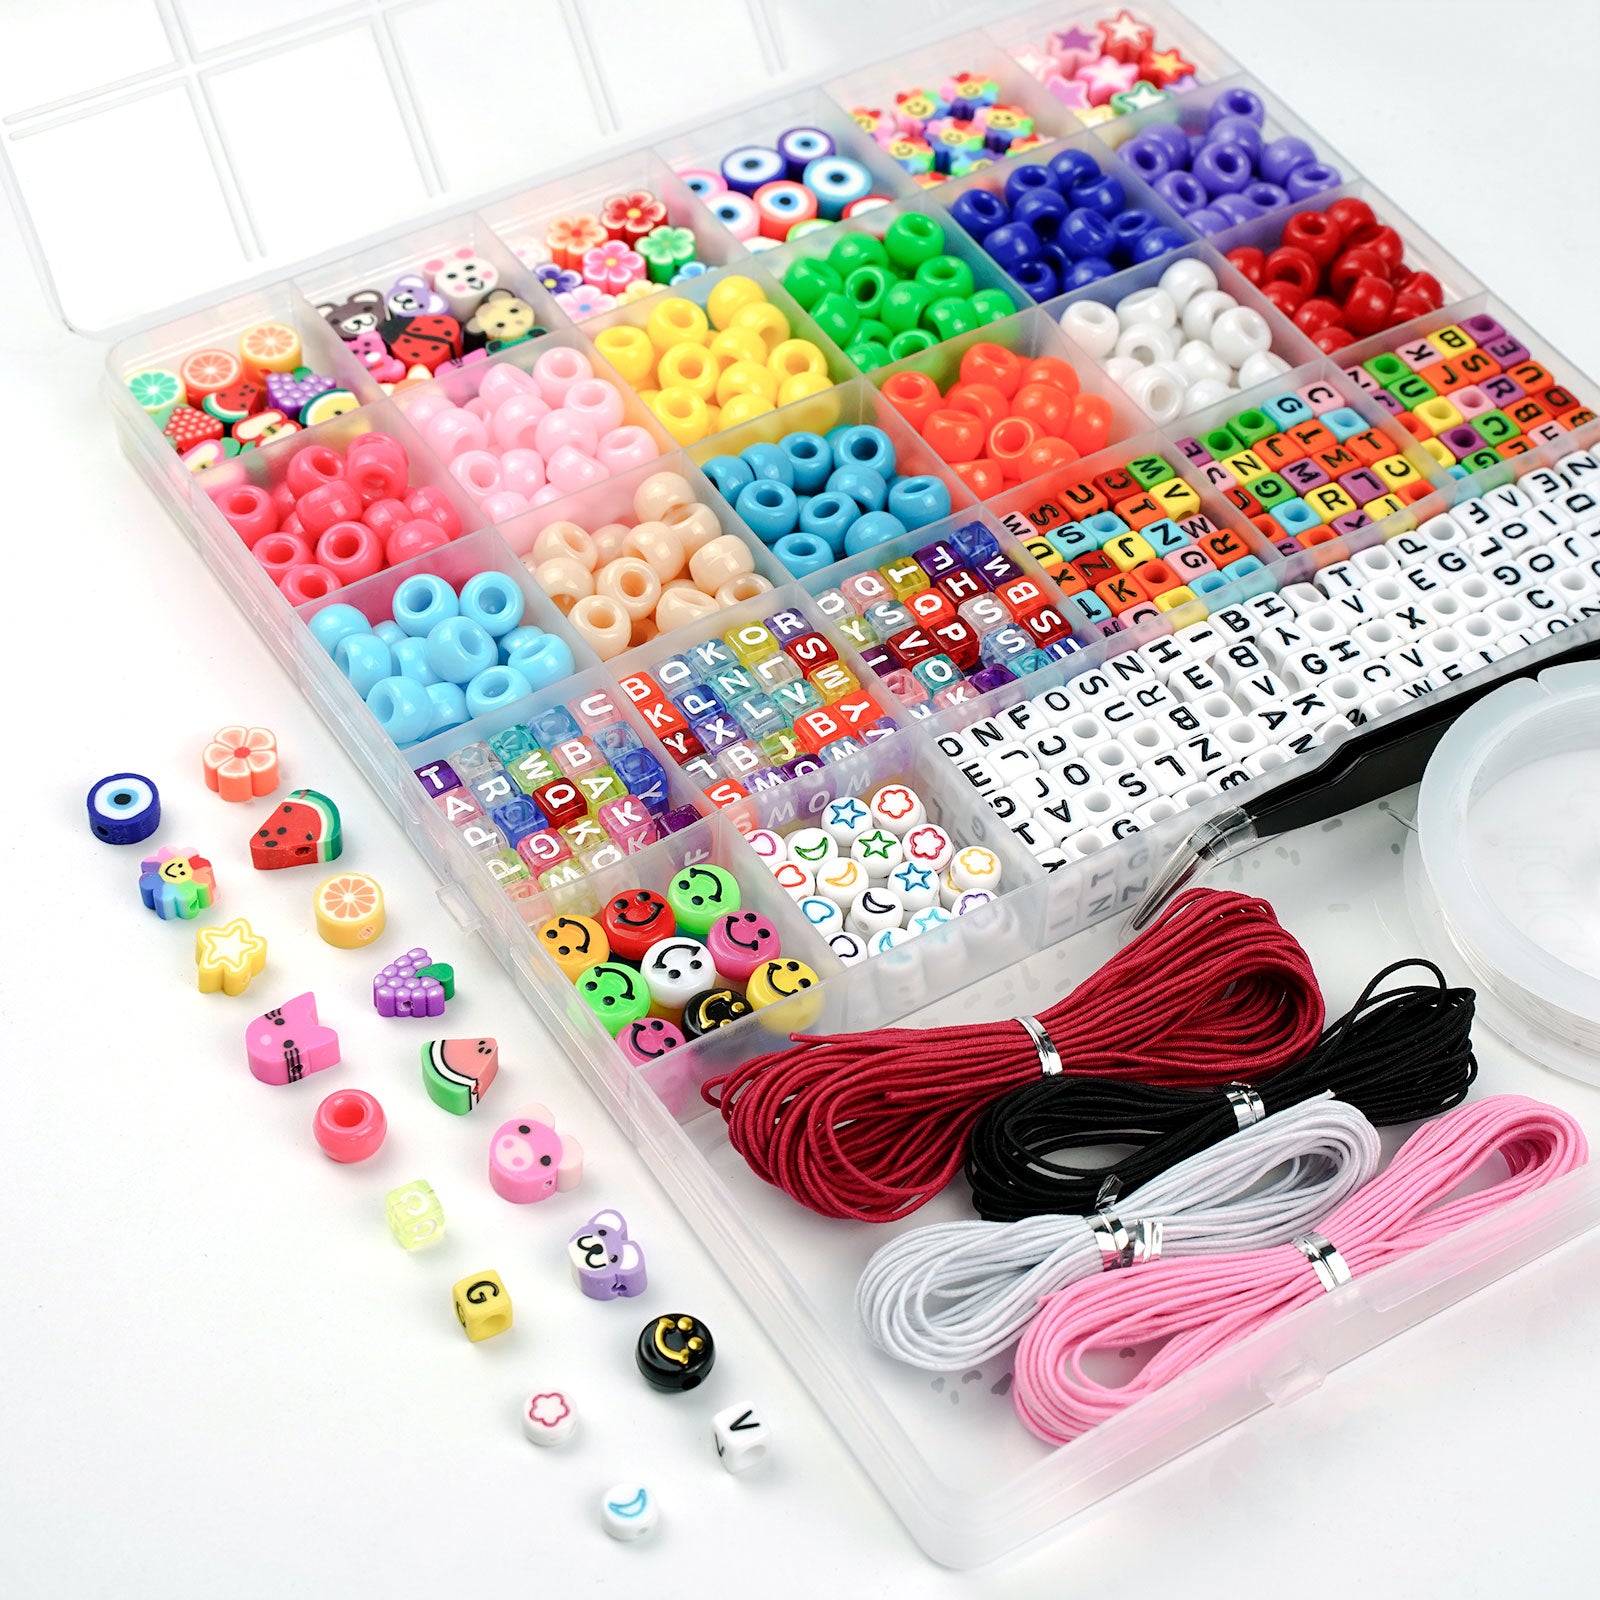 Tephran Bracelet Making Kit - 170pc Embroidery Floss Thread & Friendship  Bracelet String Kit | Wayfair